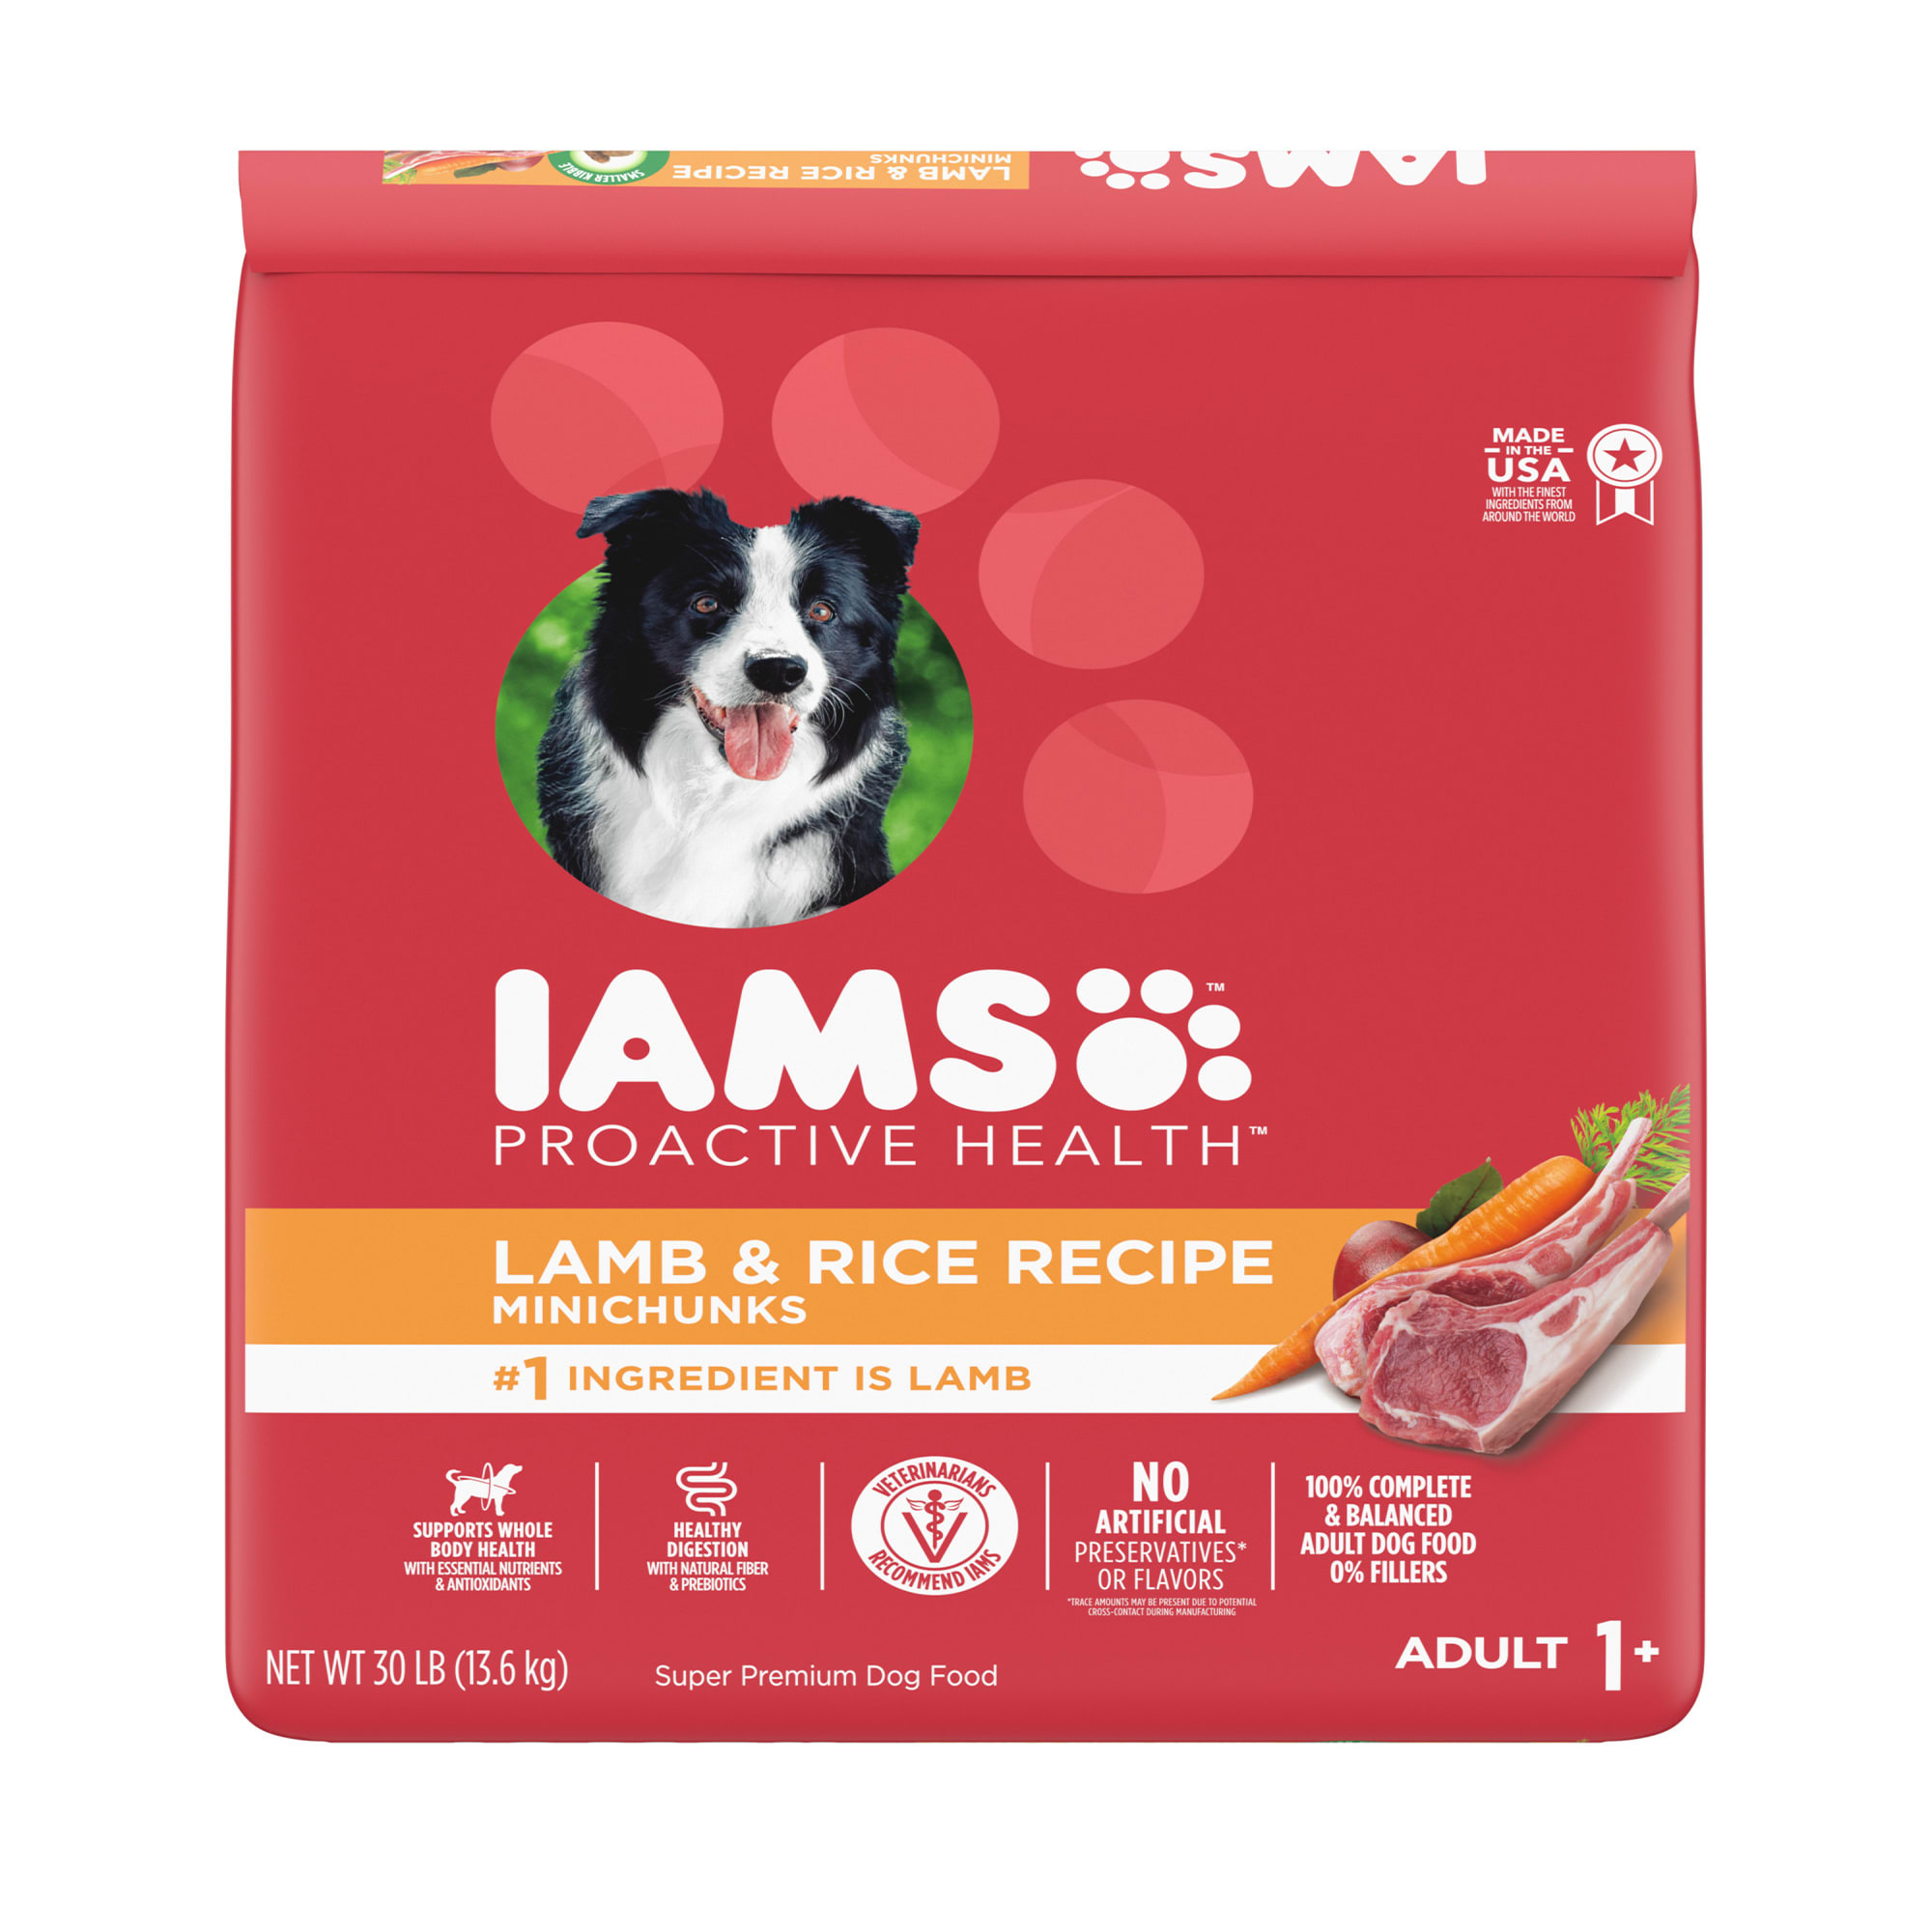 iams mature dog food